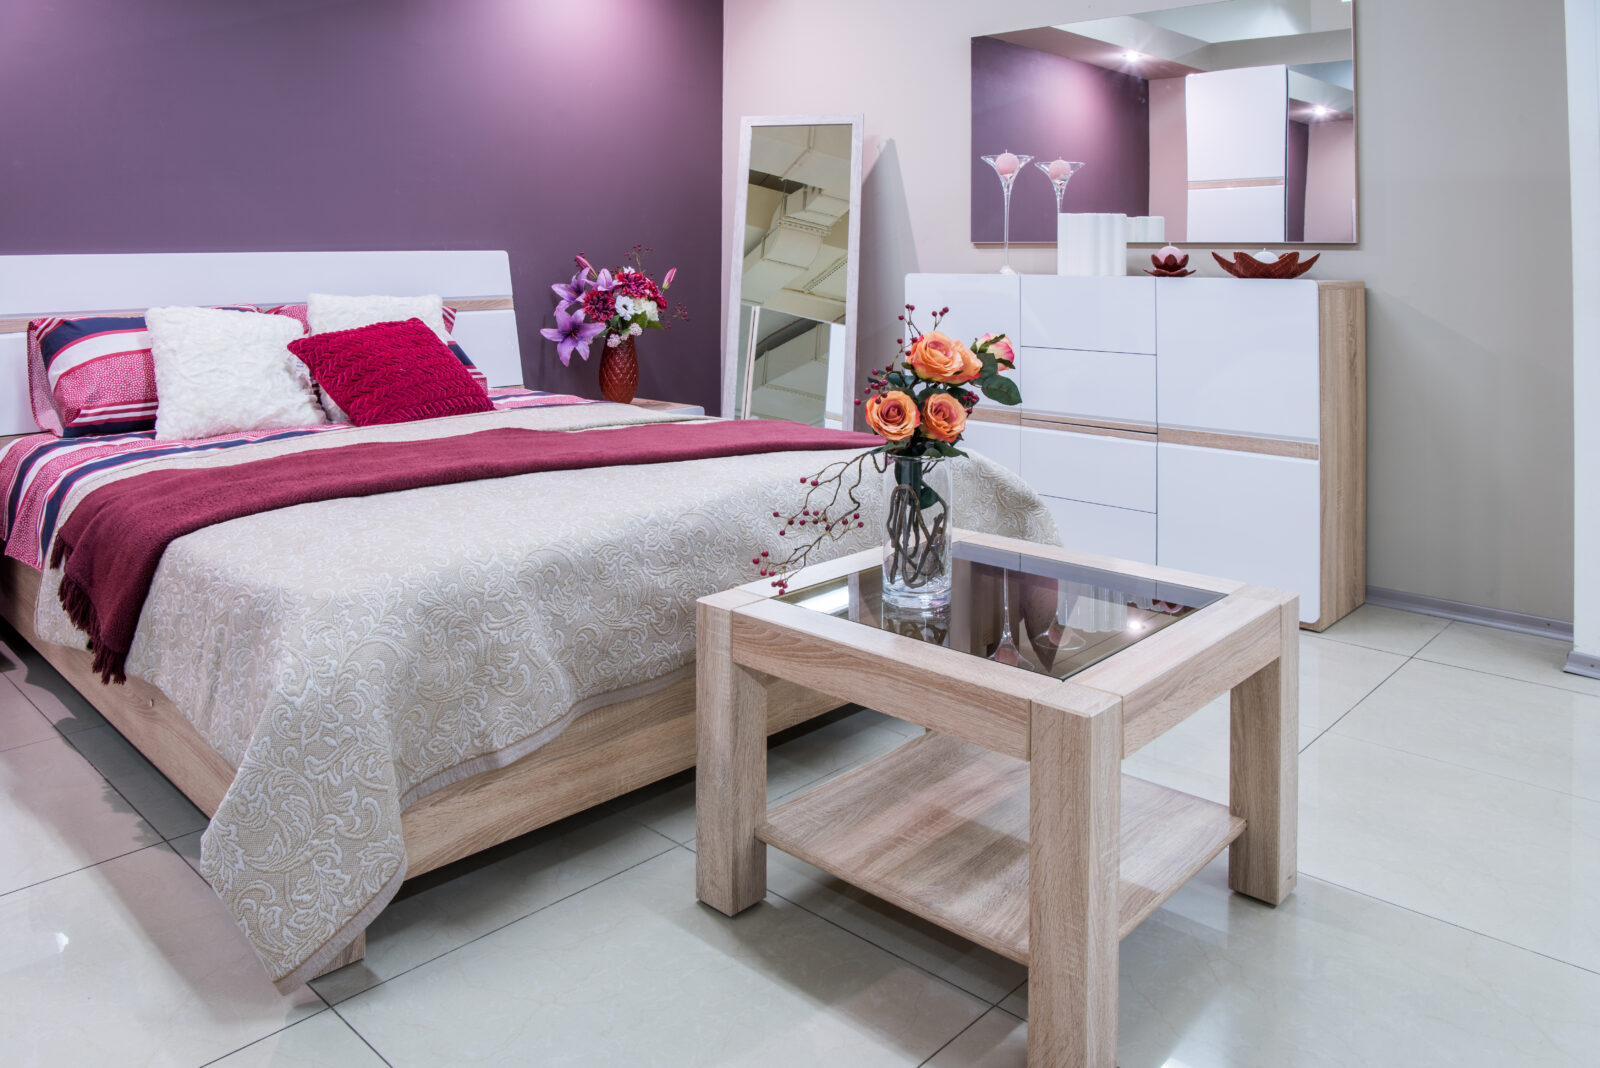 sypialnia w kolorze fioletowym